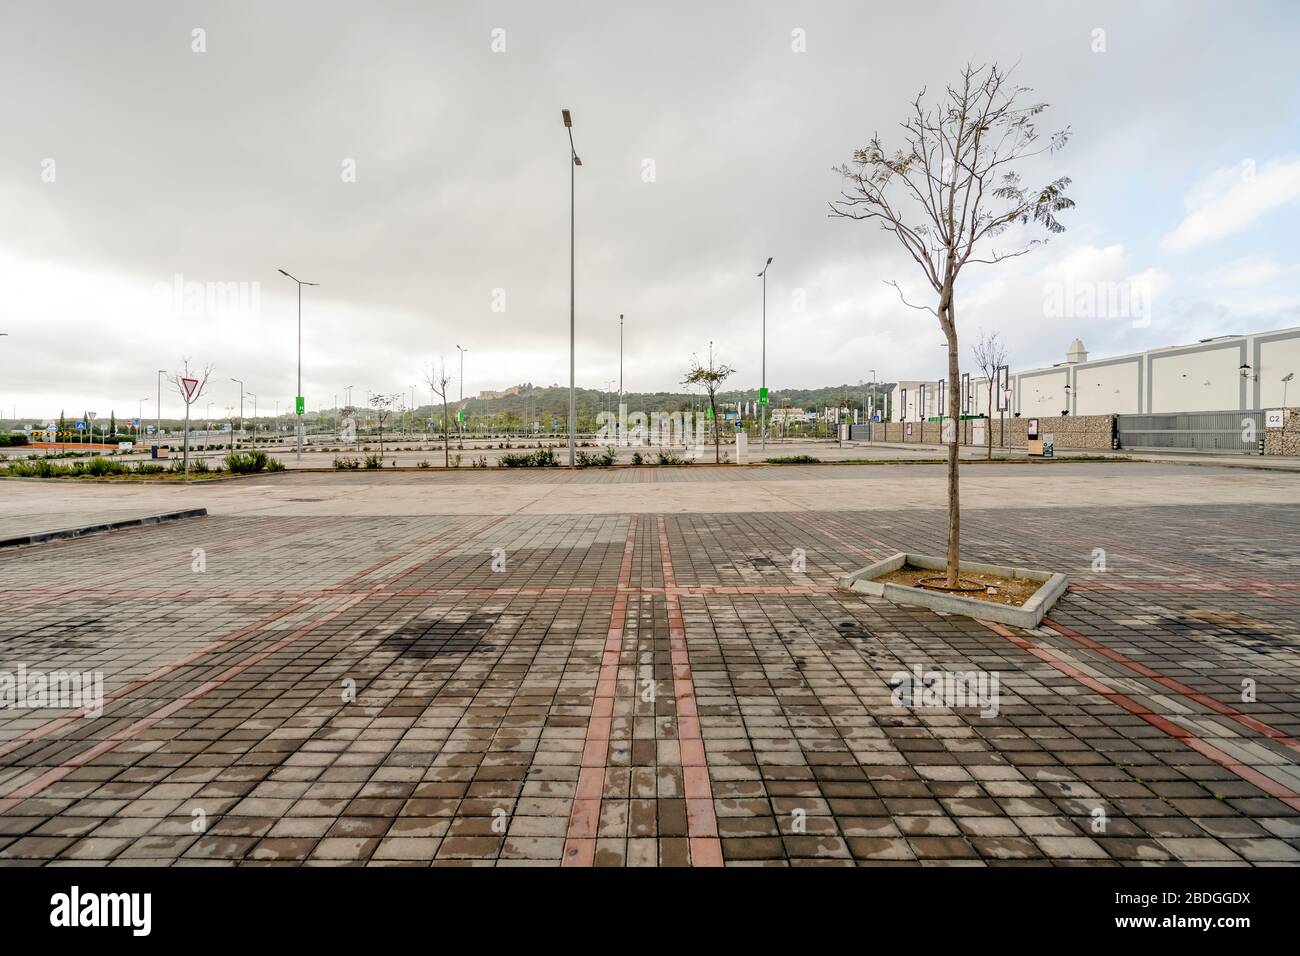 Faro, Portugal - 7 de abril de 2020: Aparcamiento vacío frente al centro comercial más grande del Algarve - MAR Shopping Mall, Designer Outlet e Ikea - Due Foto de stock